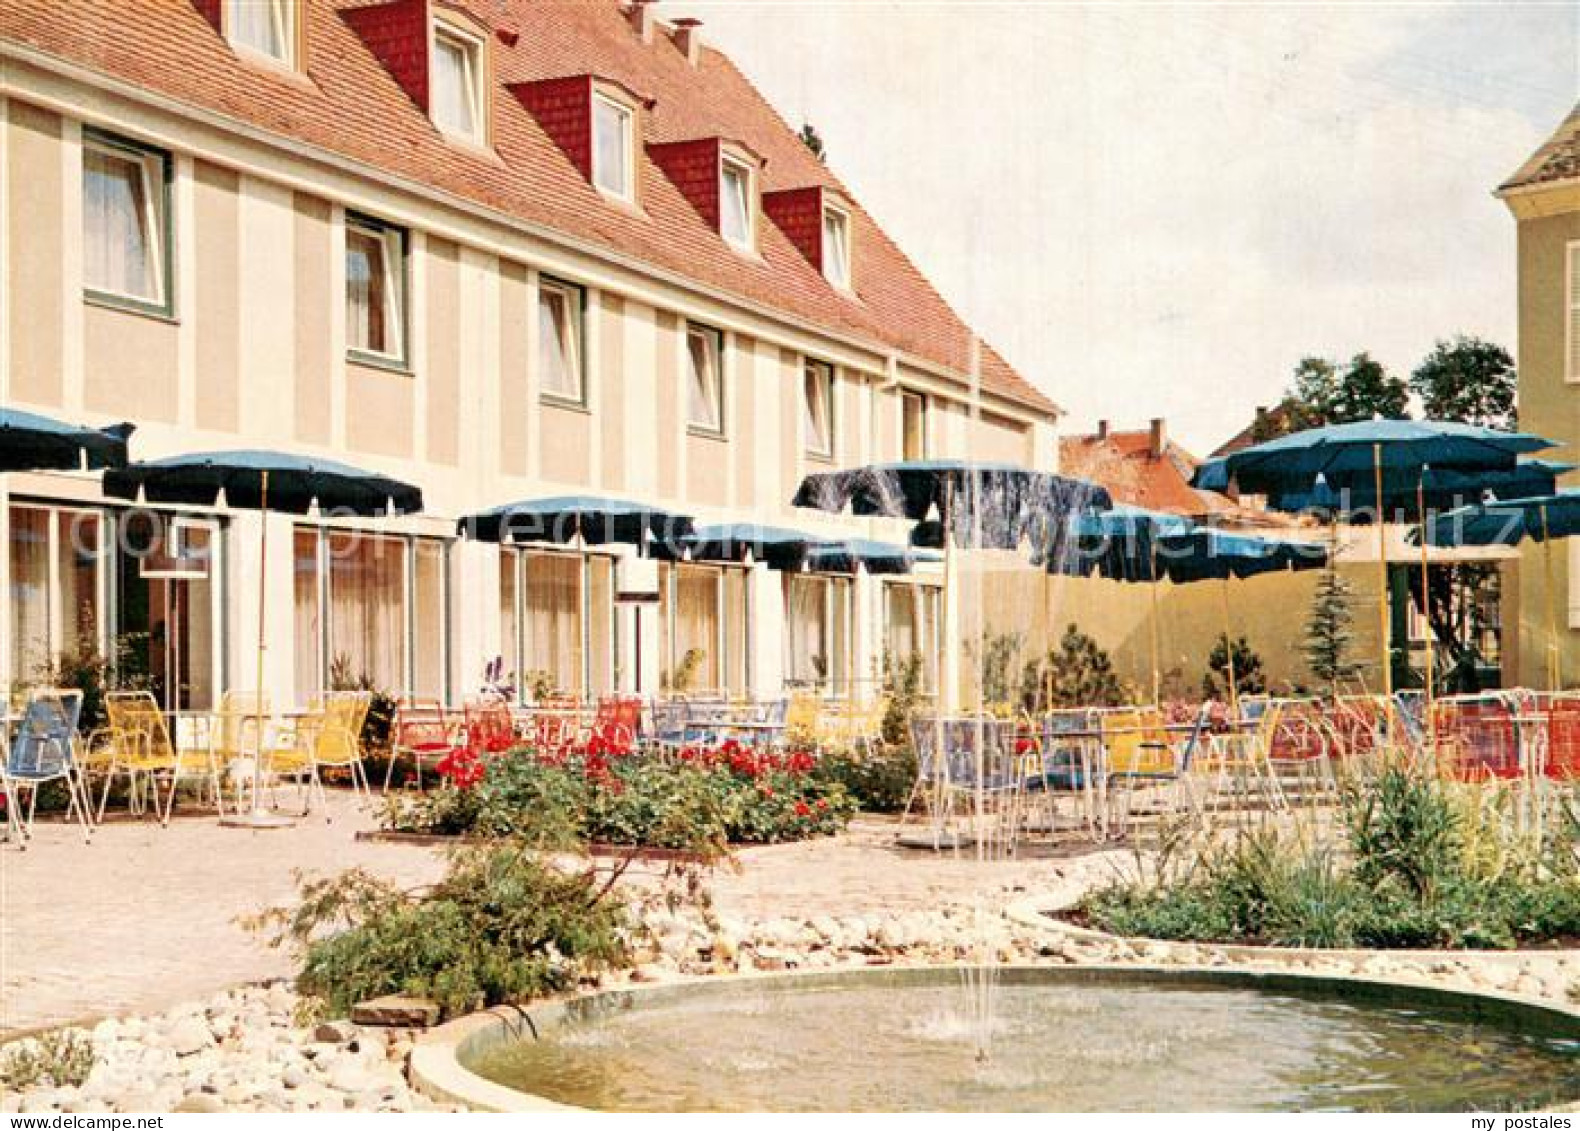 73743040 Deidesheim Reichsrat Von Buhl Hotel Kaffeeterrasse Deidesheim - Deidesheim